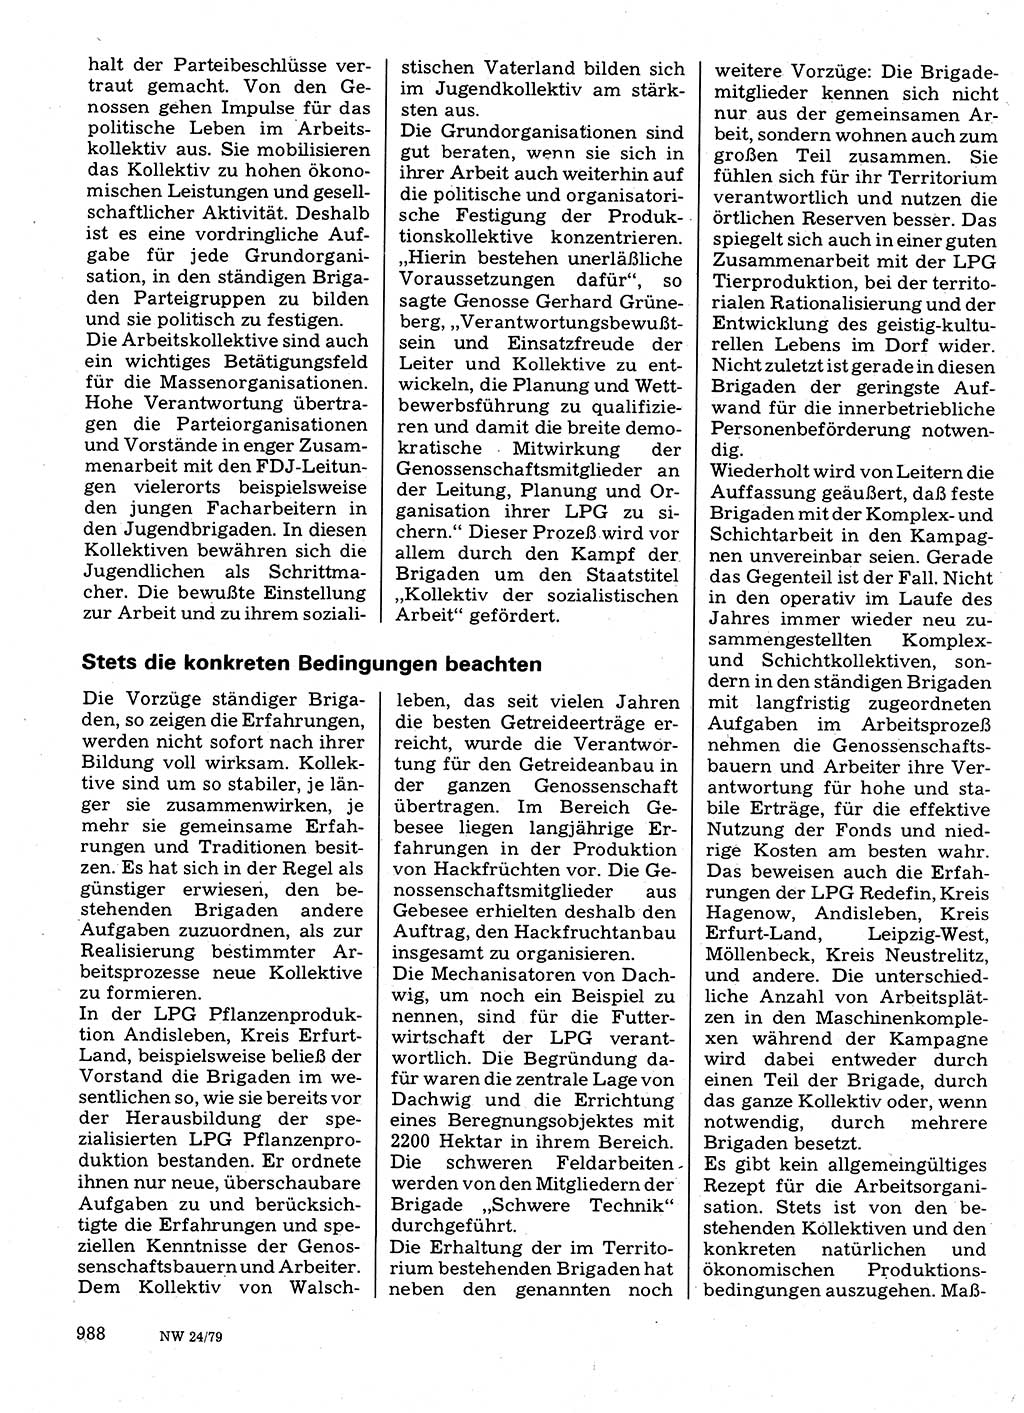 Neuer Weg (NW), Organ des Zentralkomitees (ZK) der SED (Sozialistische Einheitspartei Deutschlands) für Fragen des Parteilebens, 34. Jahrgang [Deutsche Demokratische Republik (DDR)] 1979, Seite 988 (NW ZK SED DDR 1979, S. 988)